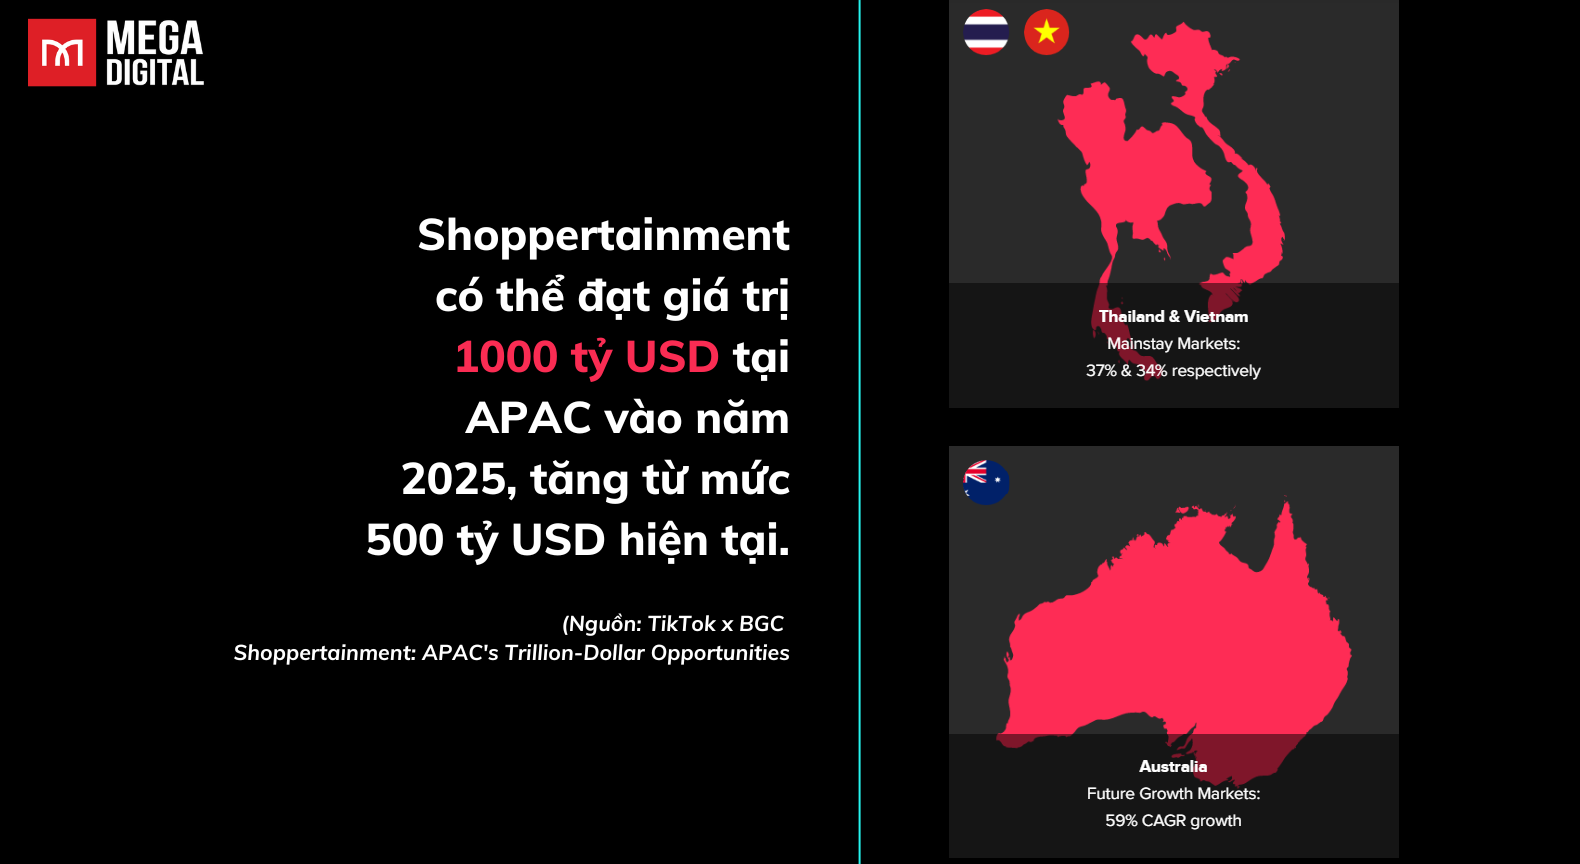 Shoppertainment có thể đạt giá trị 1000 tỷ USD tại APAC vào năm 2025